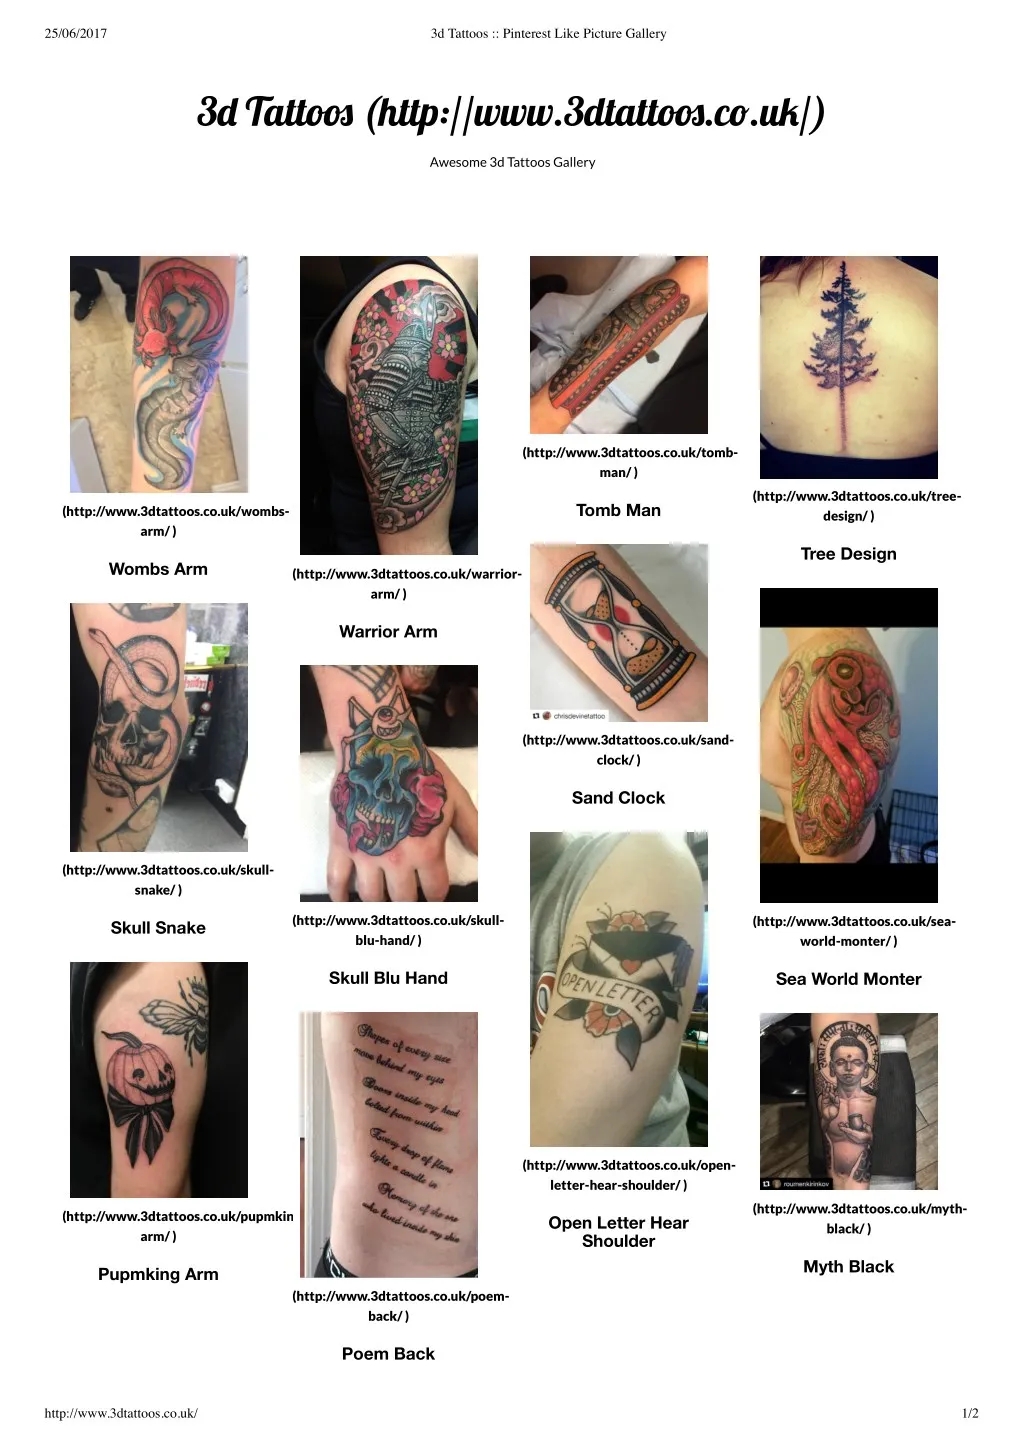 Family Portrait Tattoo - Best Tattoo Ideas Gallery